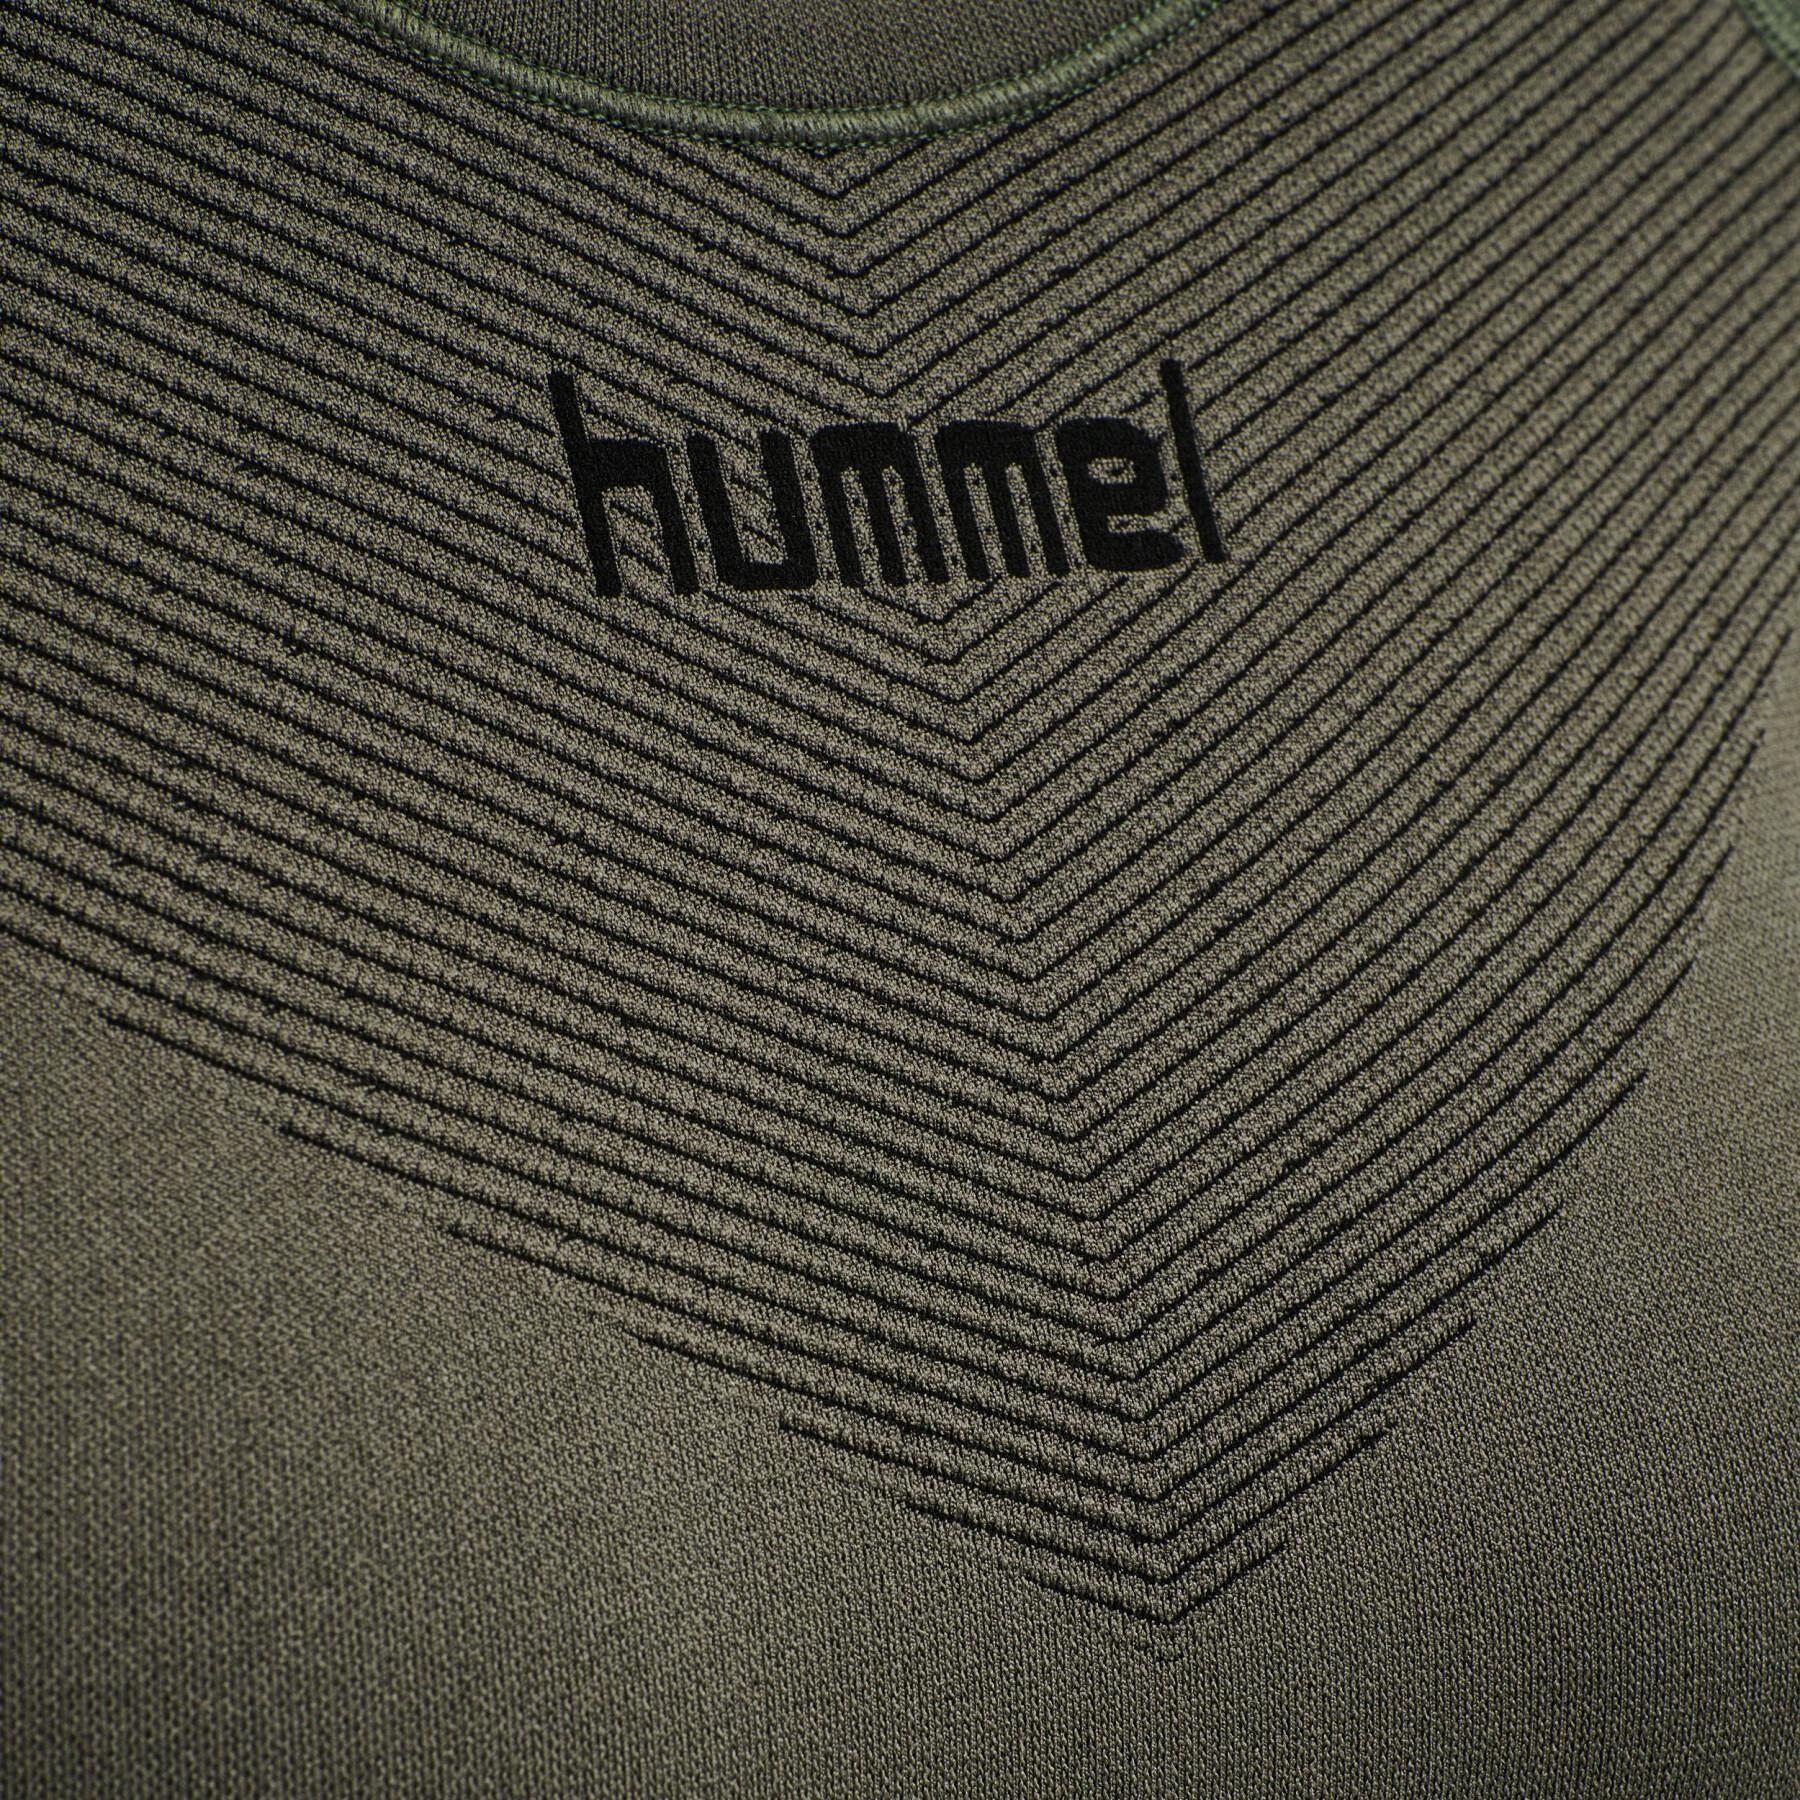 Women's long sleeve jersey Hummel First